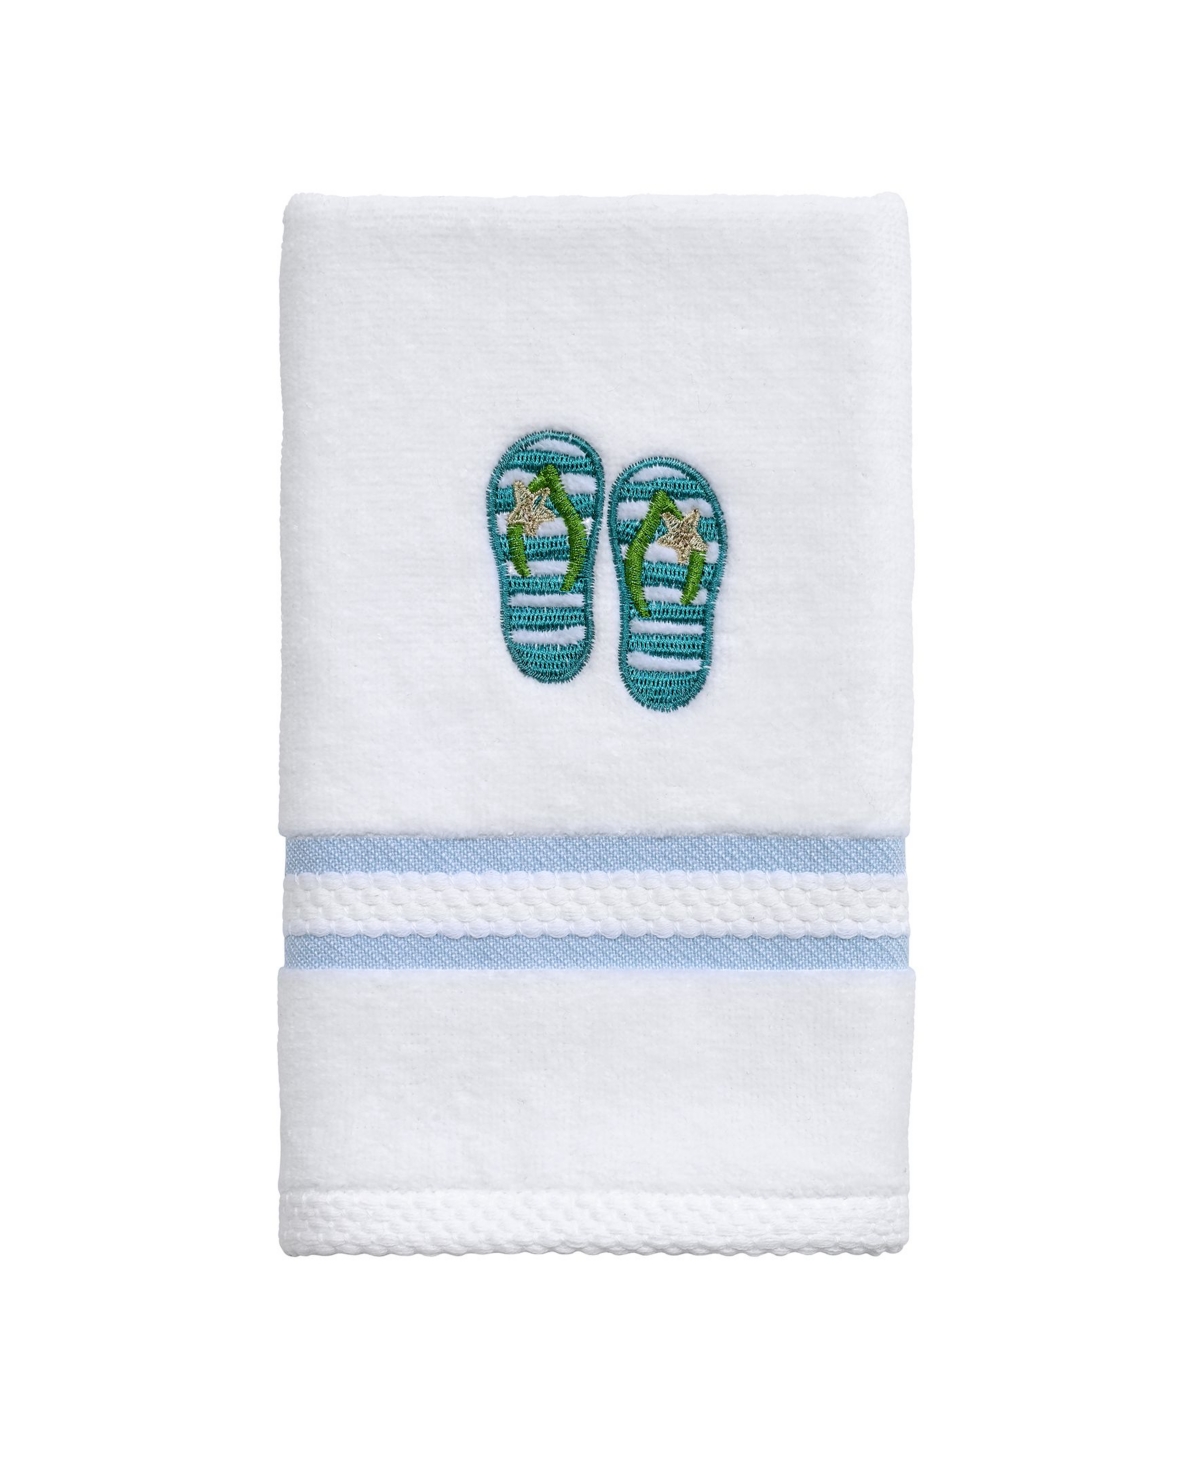 Avanti Beach Mode Fingertip Towel, 11 x 18 Bedding